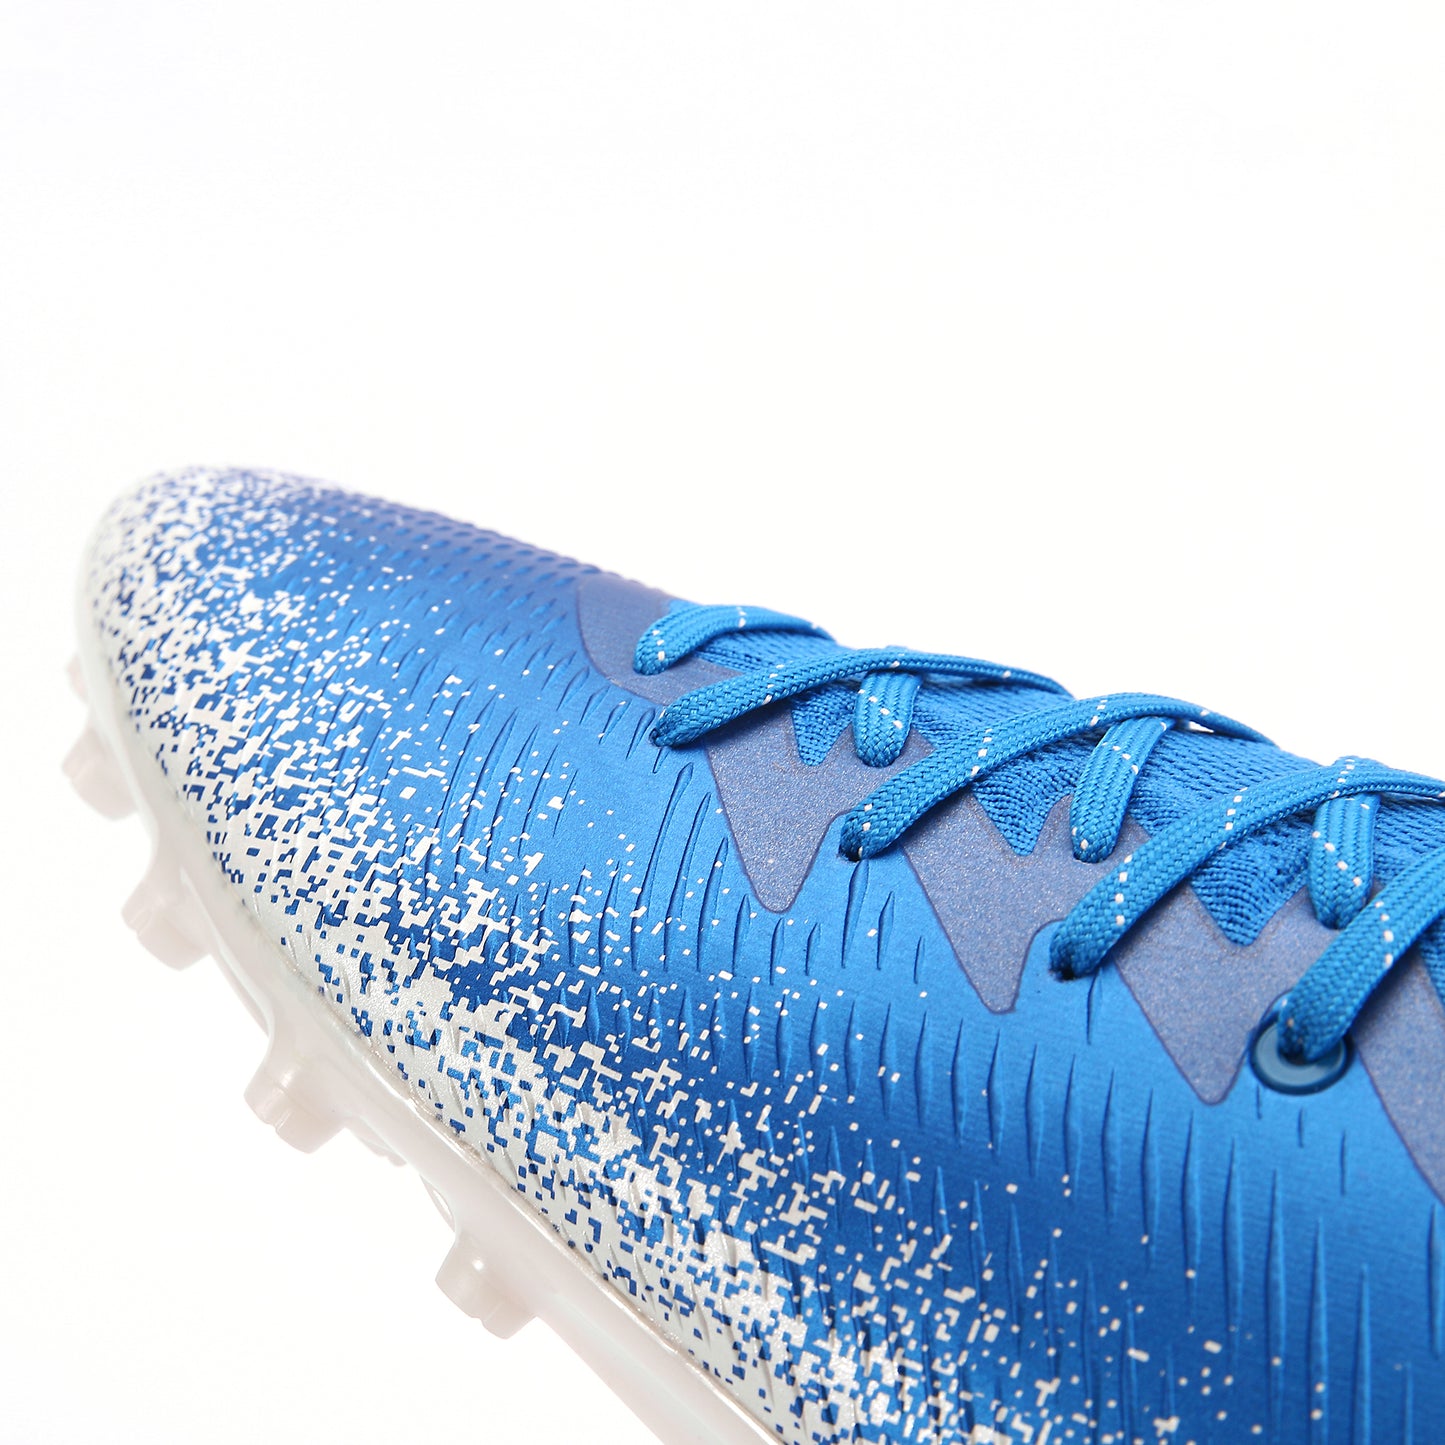 Raider Football Boots- Blue